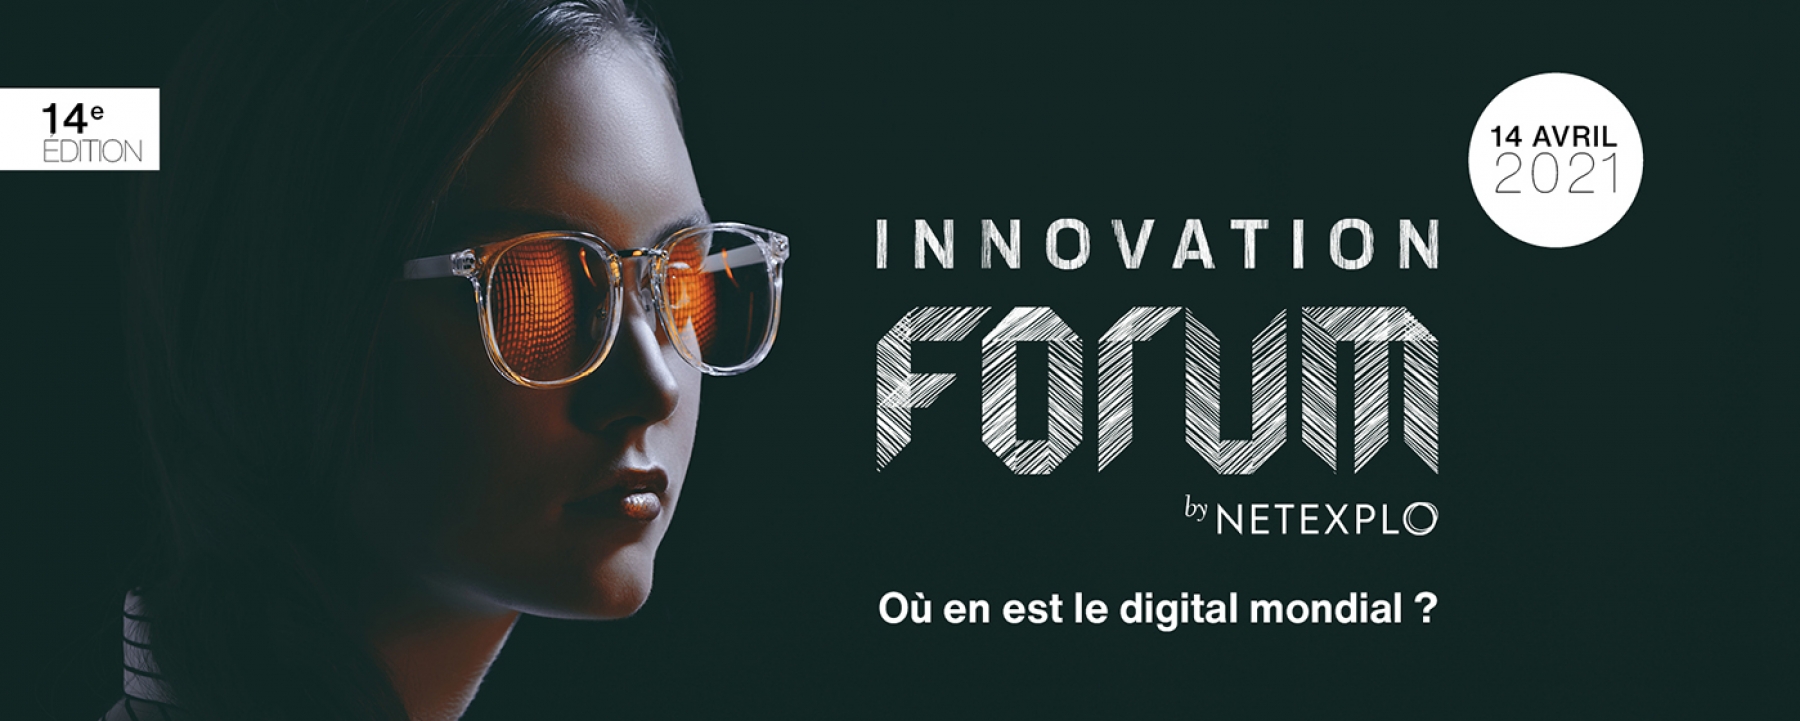 Innovation Forum 2021, co-organisé par l'UNESCO et Netexplo le 14 avril 2021